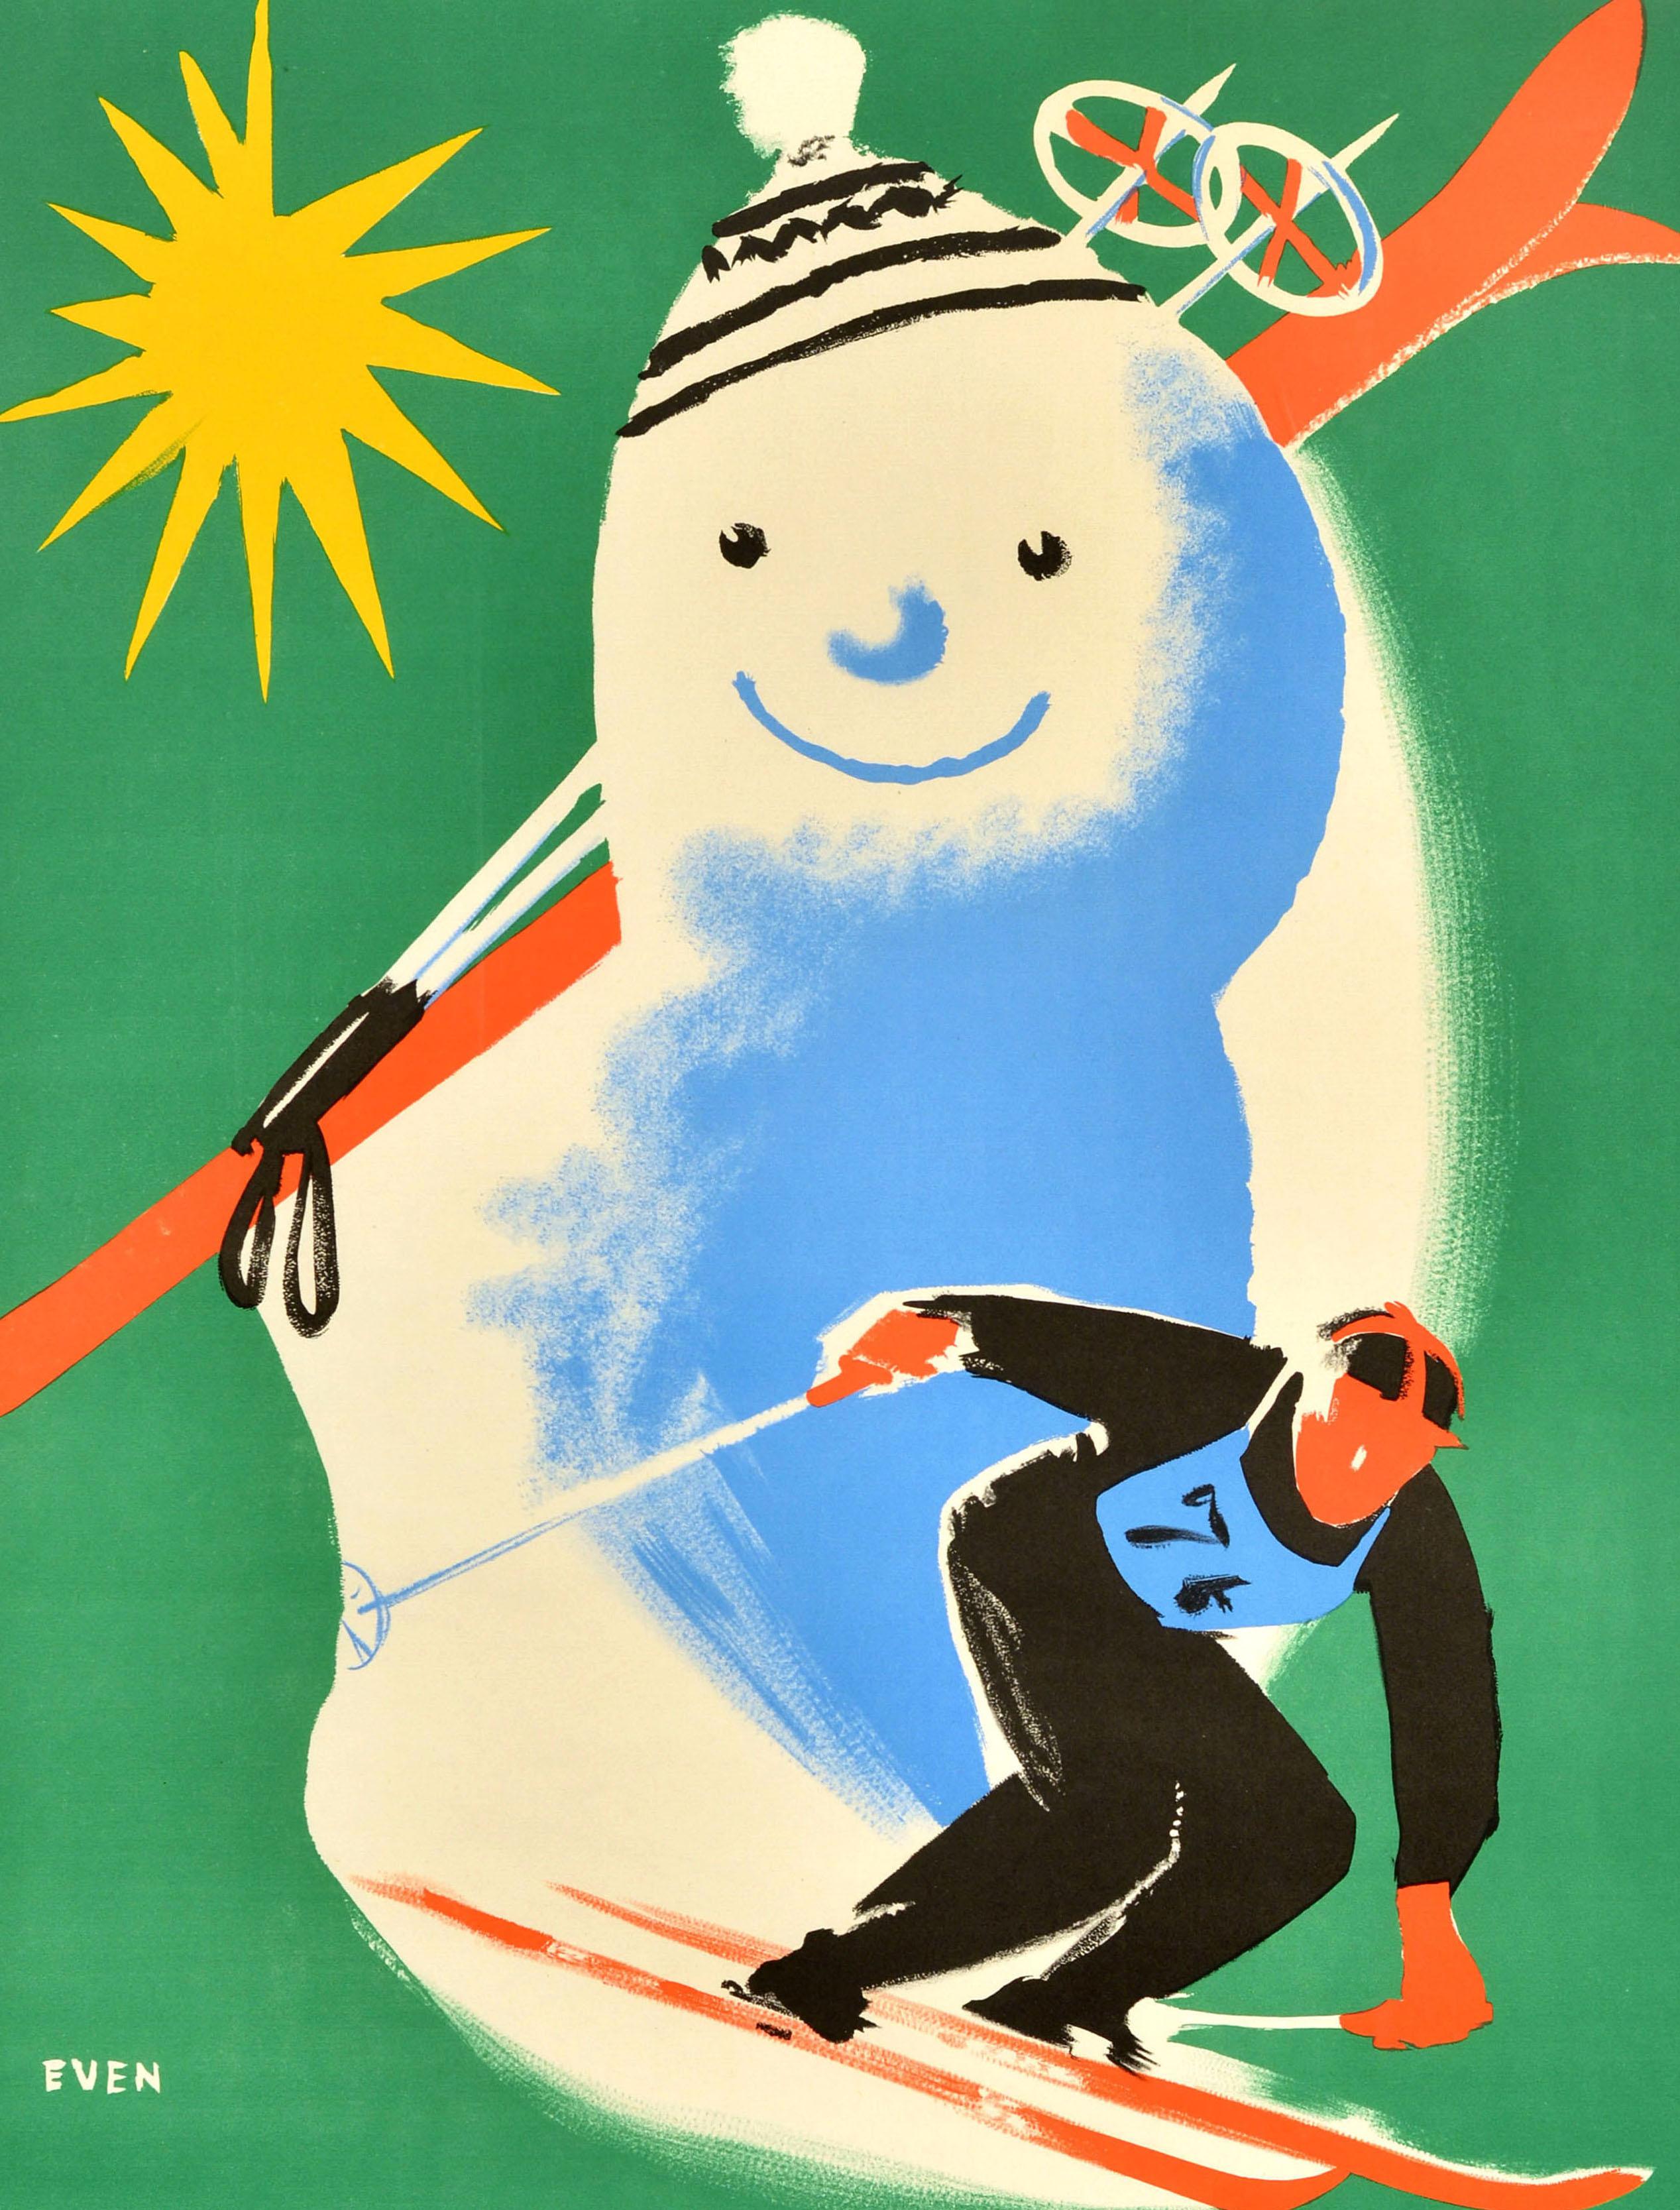 Affiche originale de voyage de ski vintage pour Le Mont Dore Auvergne en France avec un design amusant de Jean Even (1910-1986) représentant un skieur portant un dossard de course dévalant une pente à toute vitesse avec un bonhomme de neige souriant